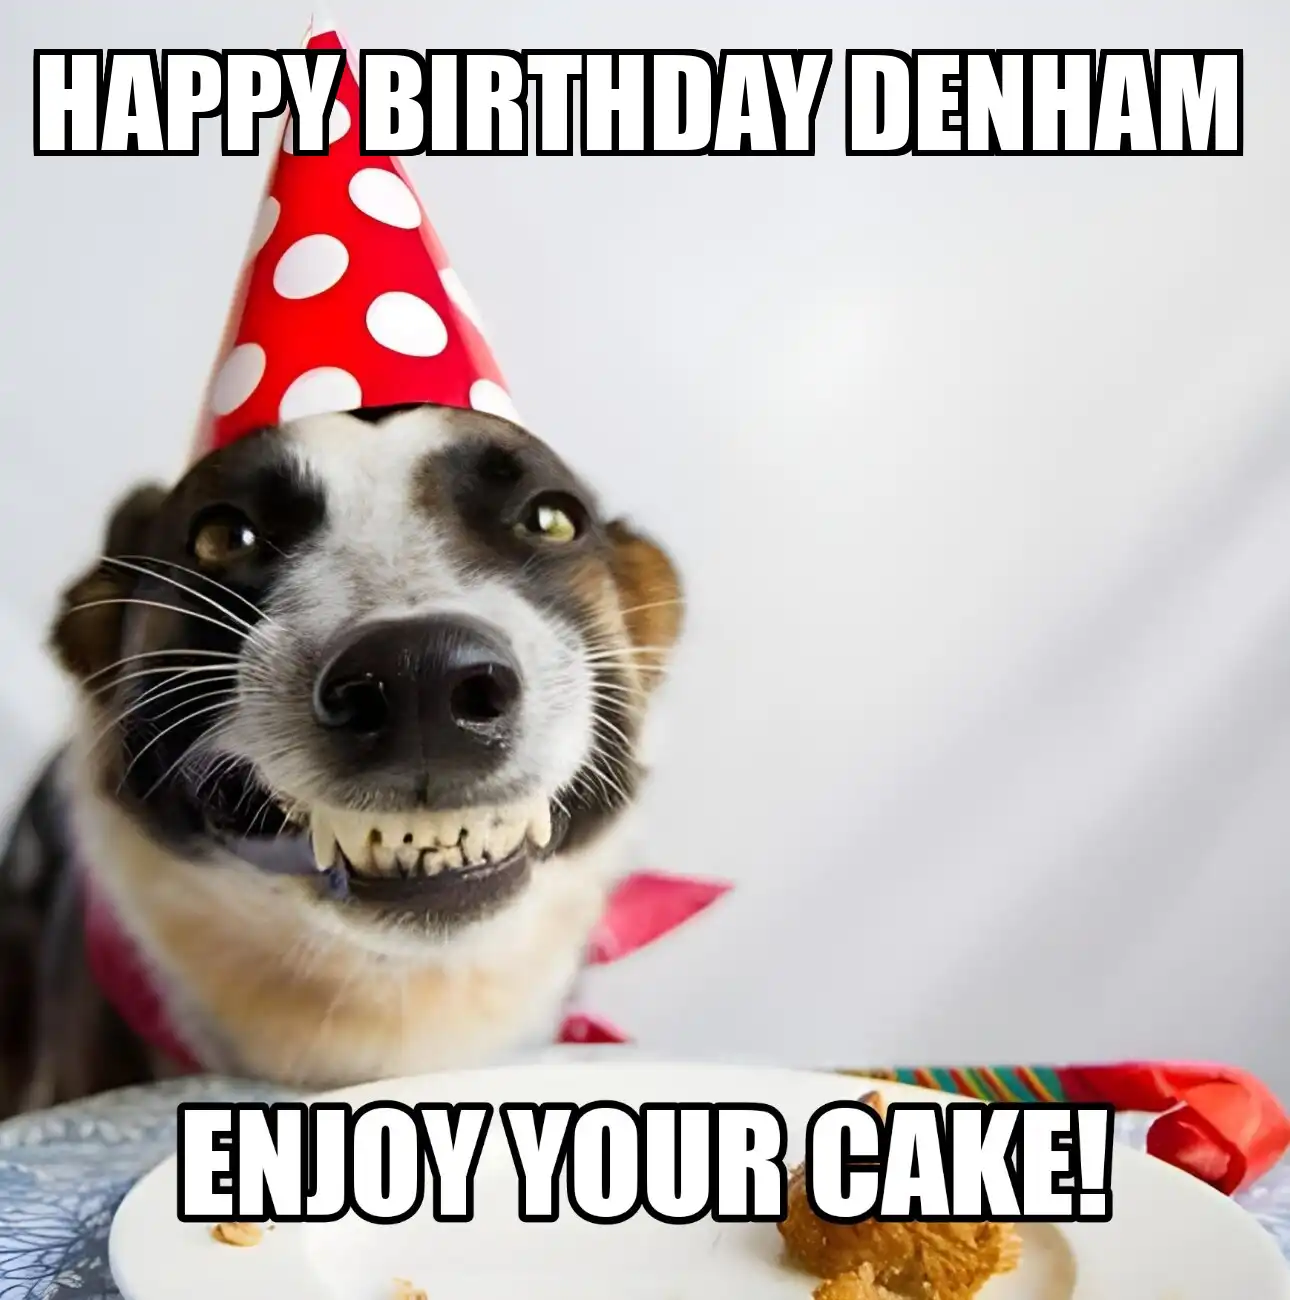 Happy Birthday Denham Enjoy Your Cake Dog Meme